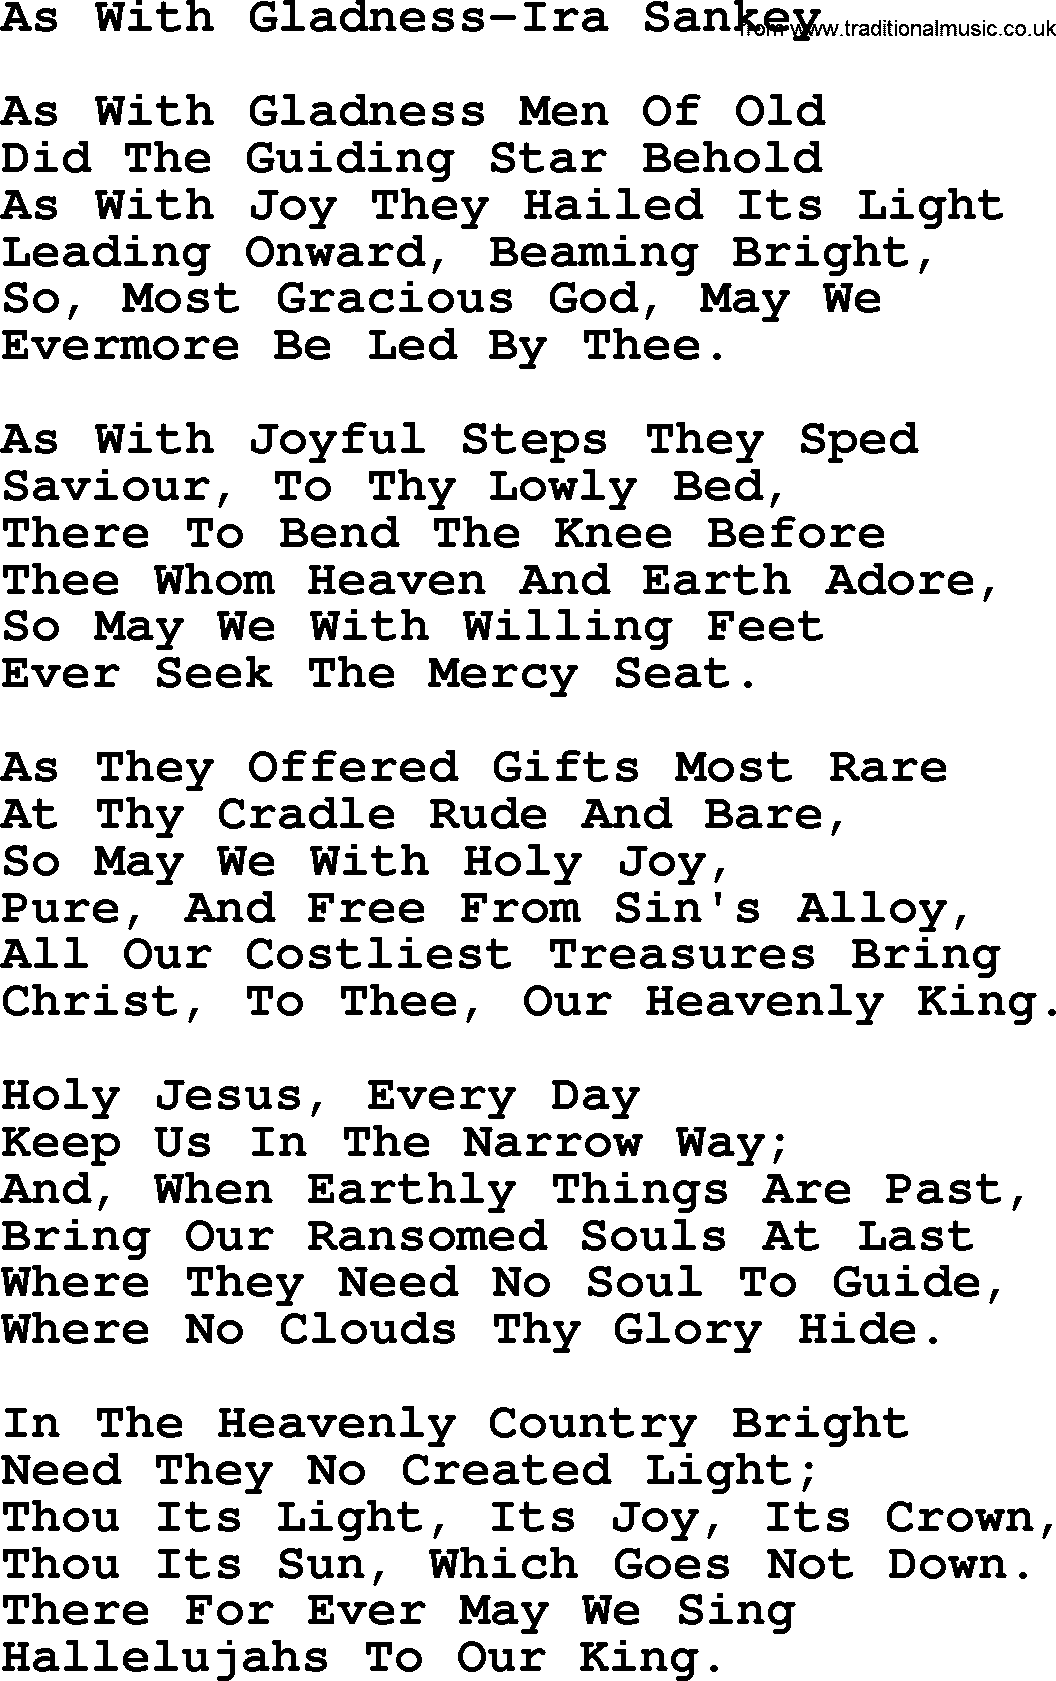 Ira Sankey hymn: As With Gladness-Ira Sankey, lyrics